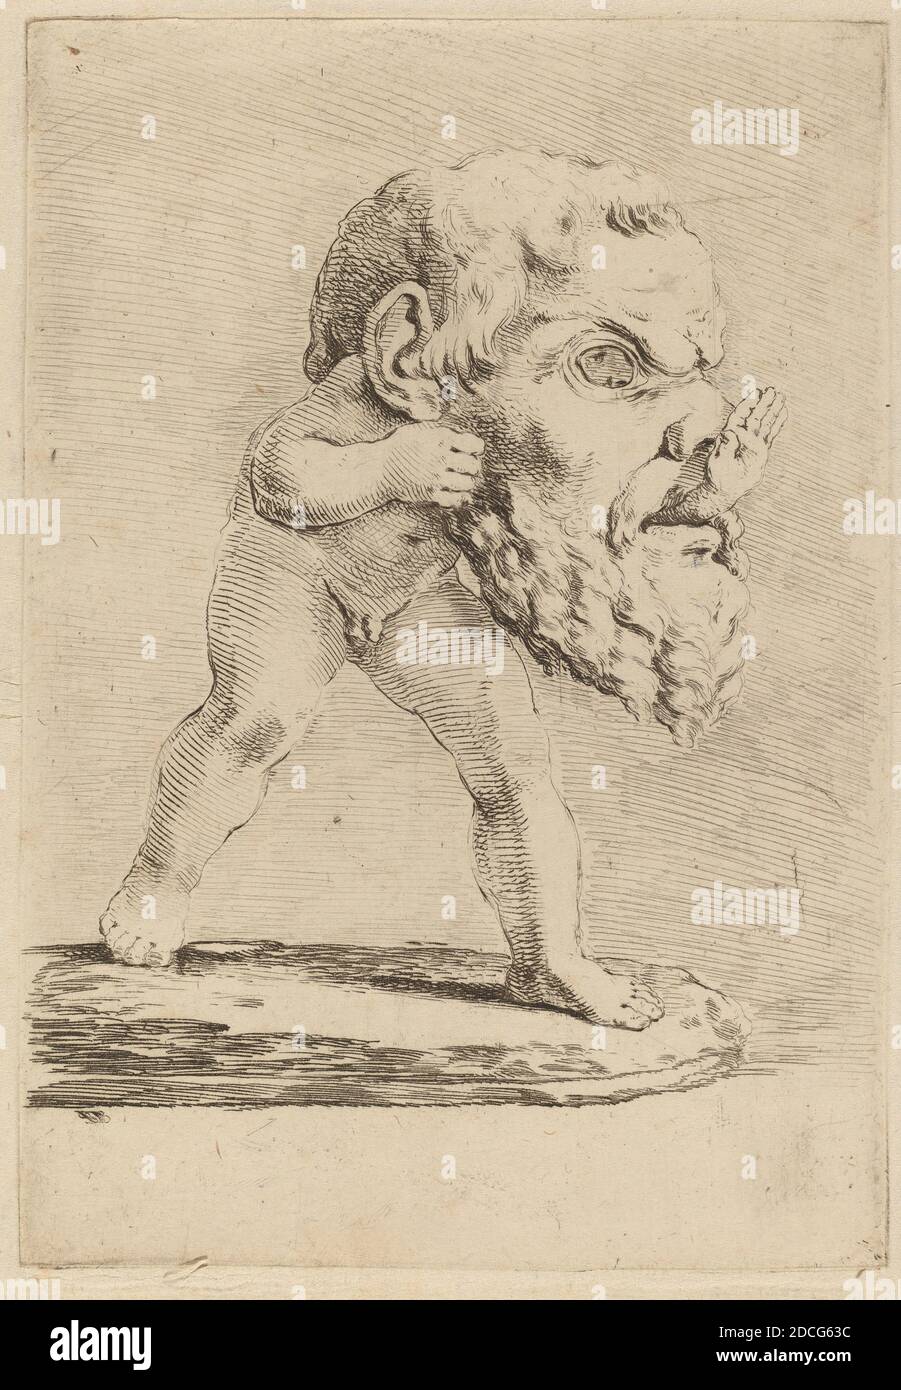 Stefano della Bella, (artista), Fiorentino, 1610 - 1664, Bambino che indossa una maschera, Quadreria Medicea, vol.3 (1986.50.11-108), (serie), incisione su carta deposta Foto Stock